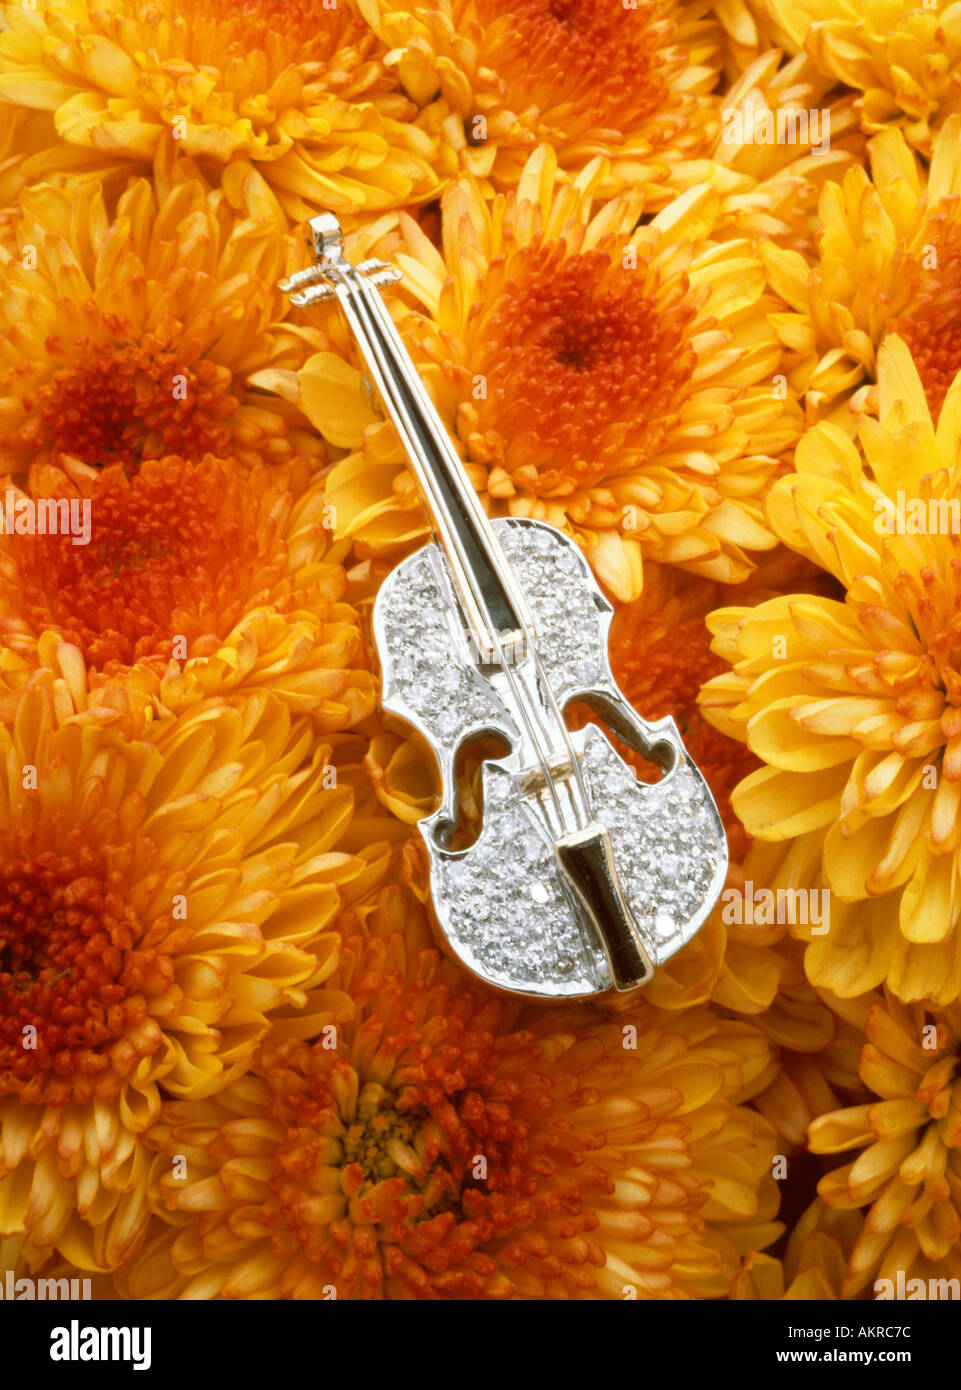 diamond violin jewelry pin on mums Stock Photo